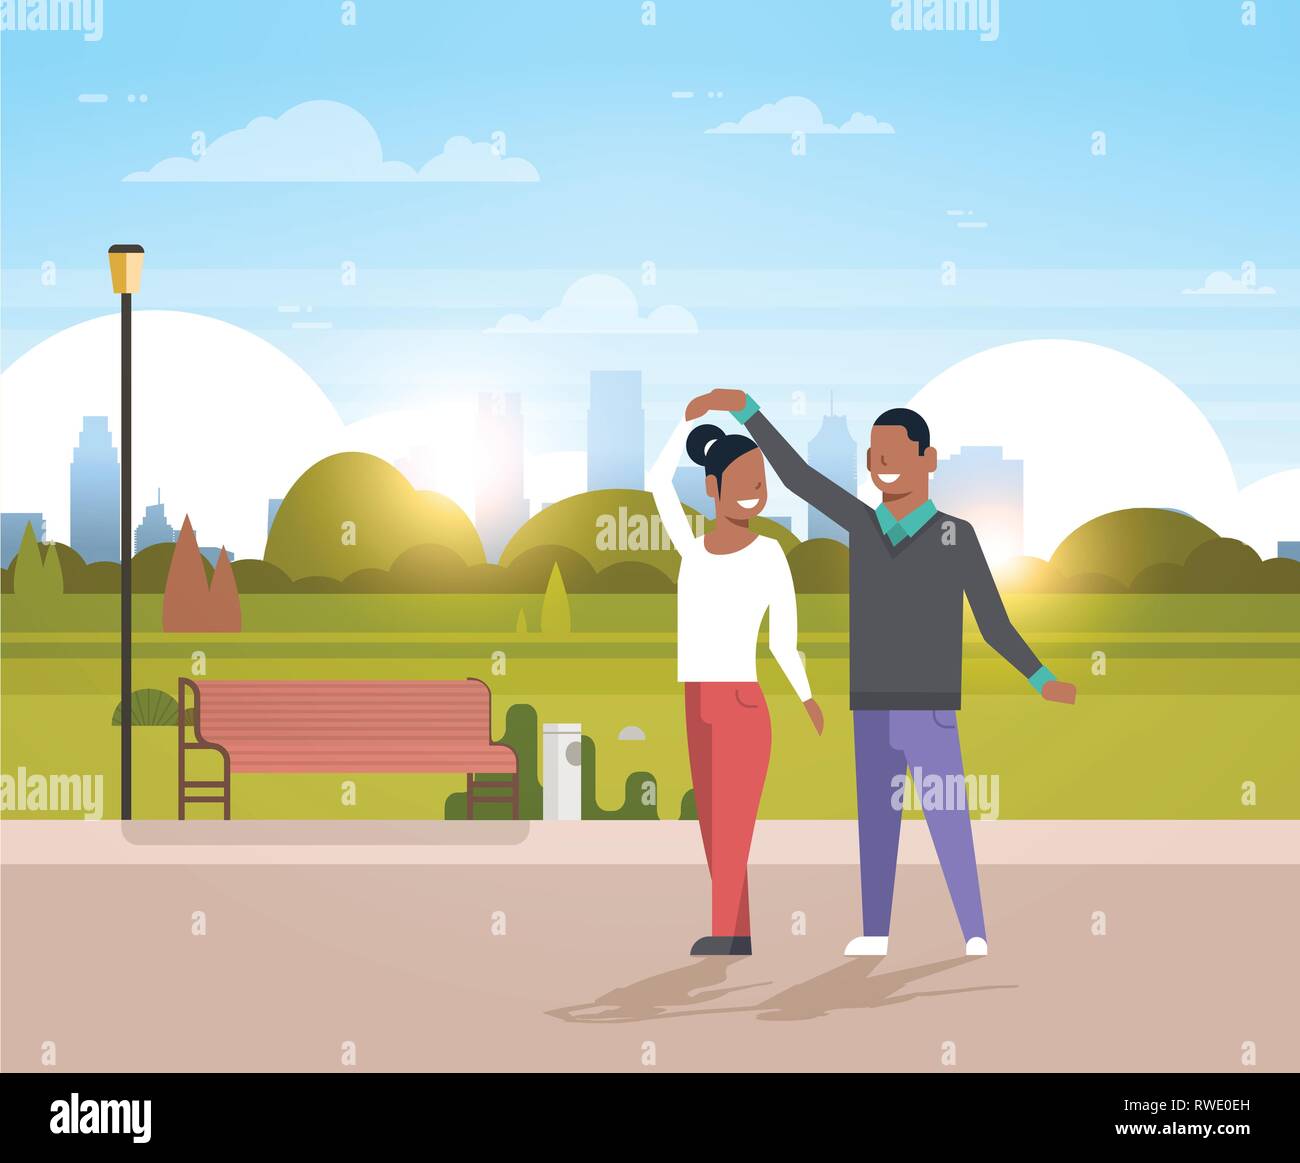 Paar tanzen zusammen afrikanische amerikanische Mann Frau Spaß Stadt städtischen Park Stadtbild Hintergrund glücklich Liebhaber männlich weiblich Zeichentrickfiguren voll Stock Vektor